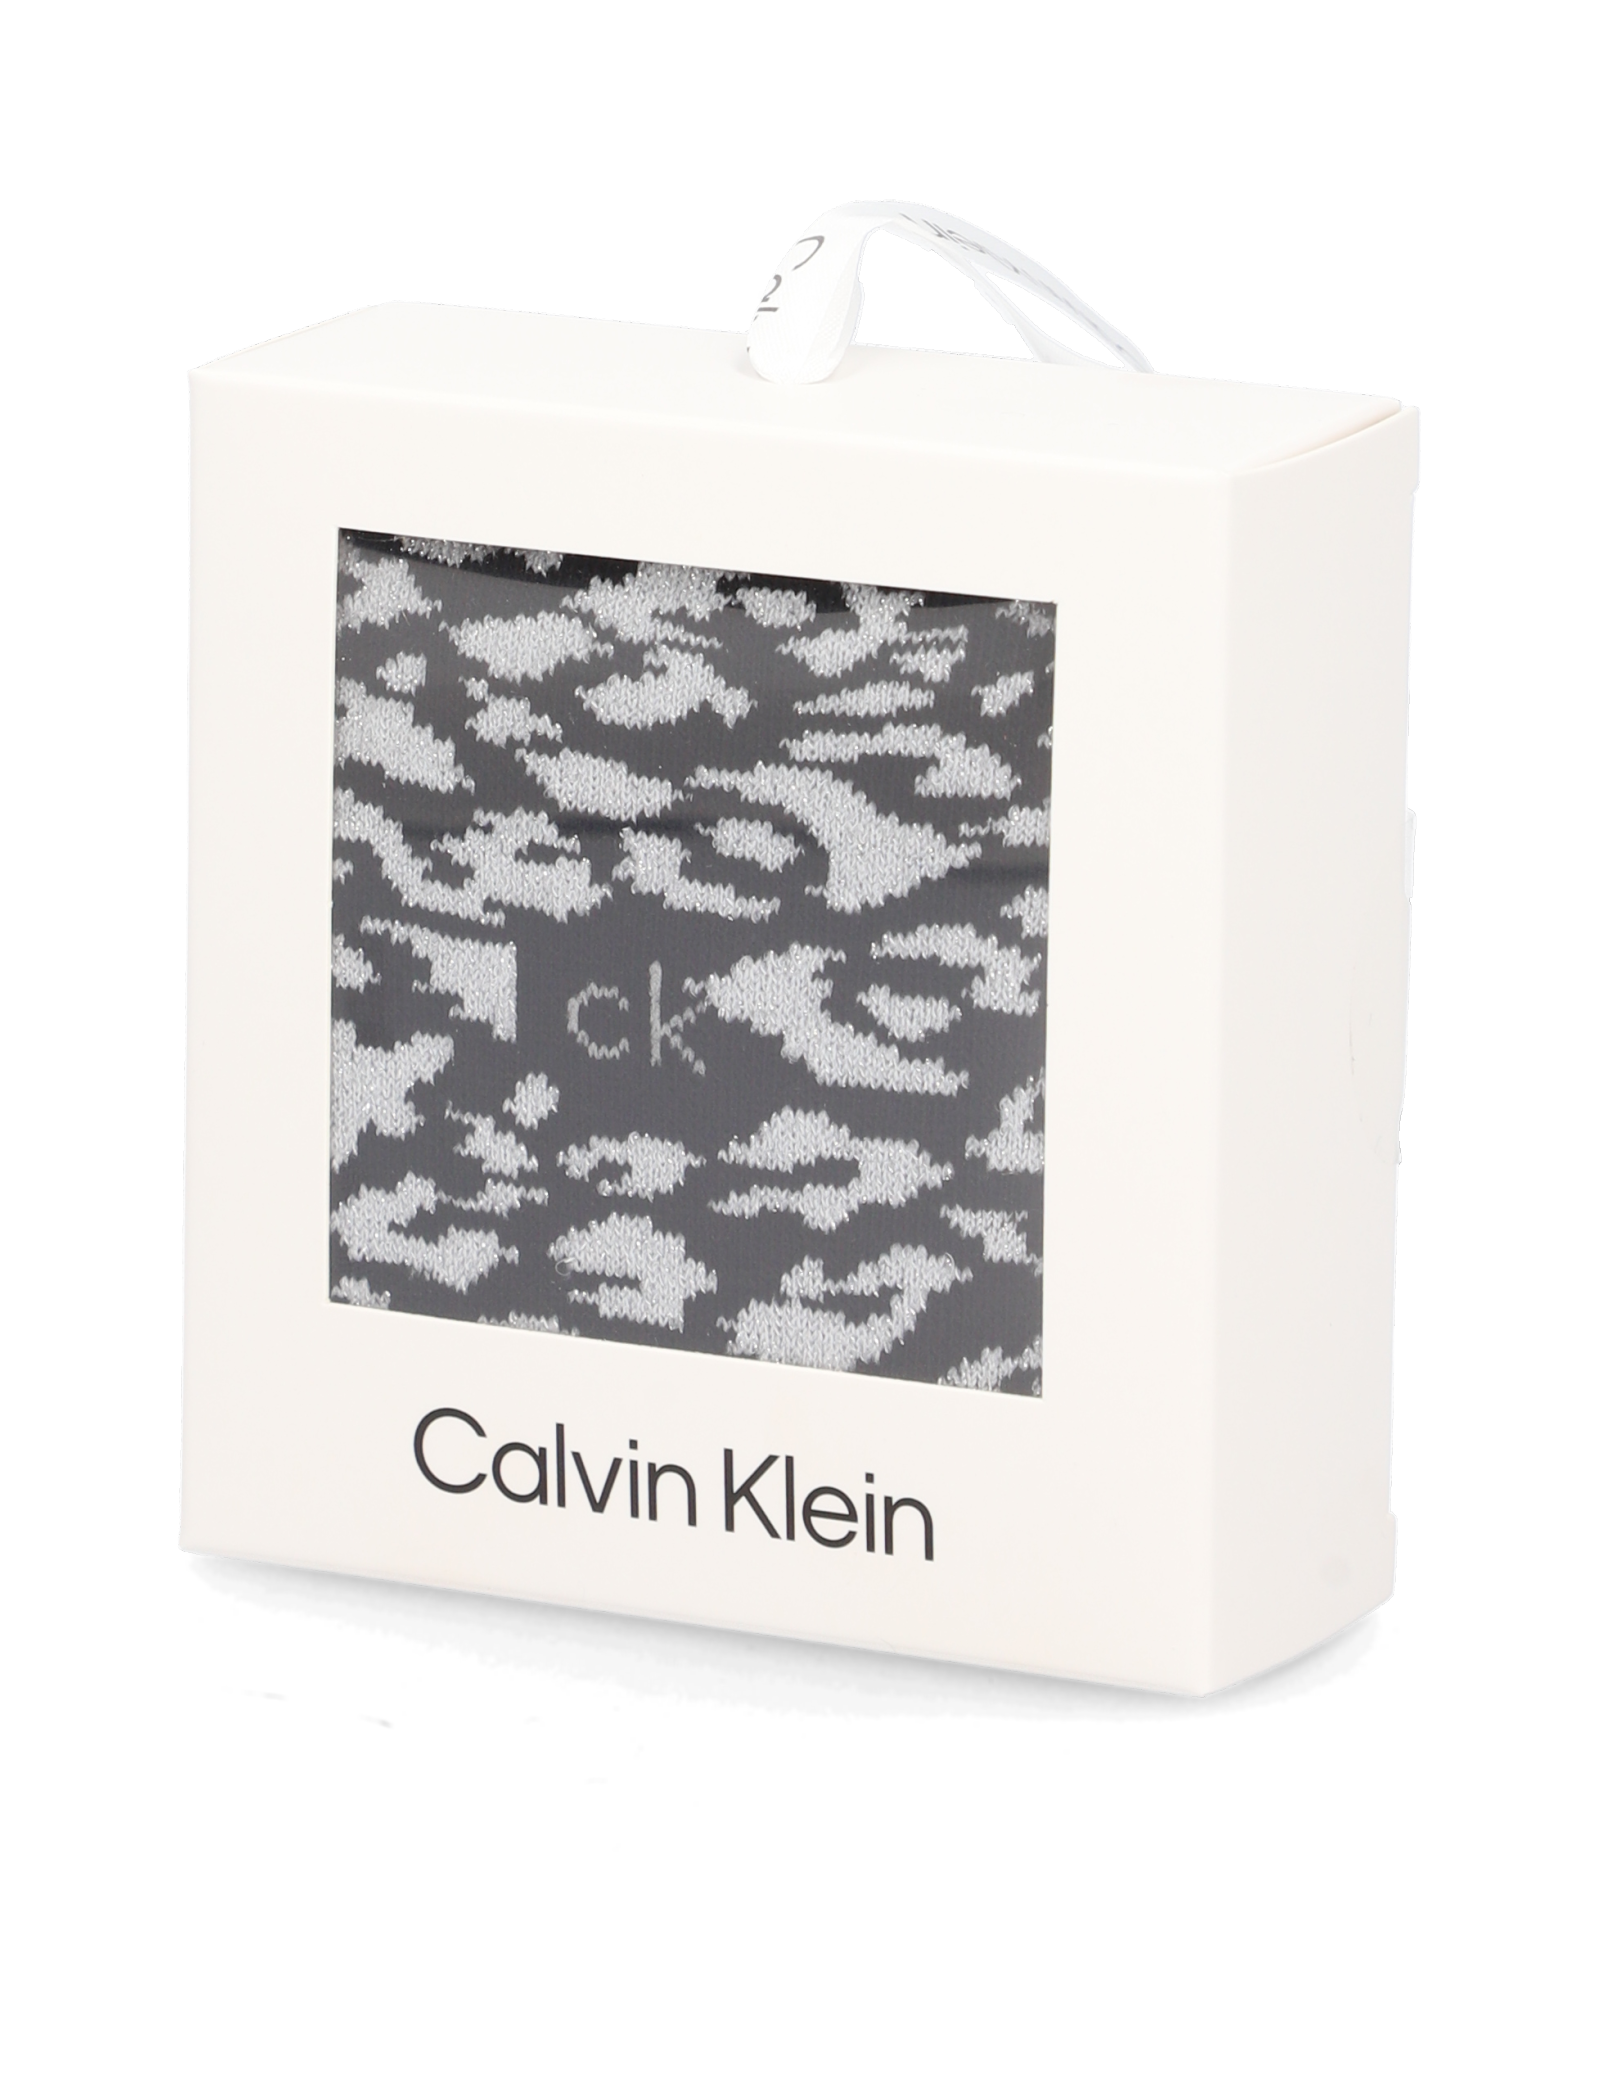 

Calvin Klein viackusové balenie